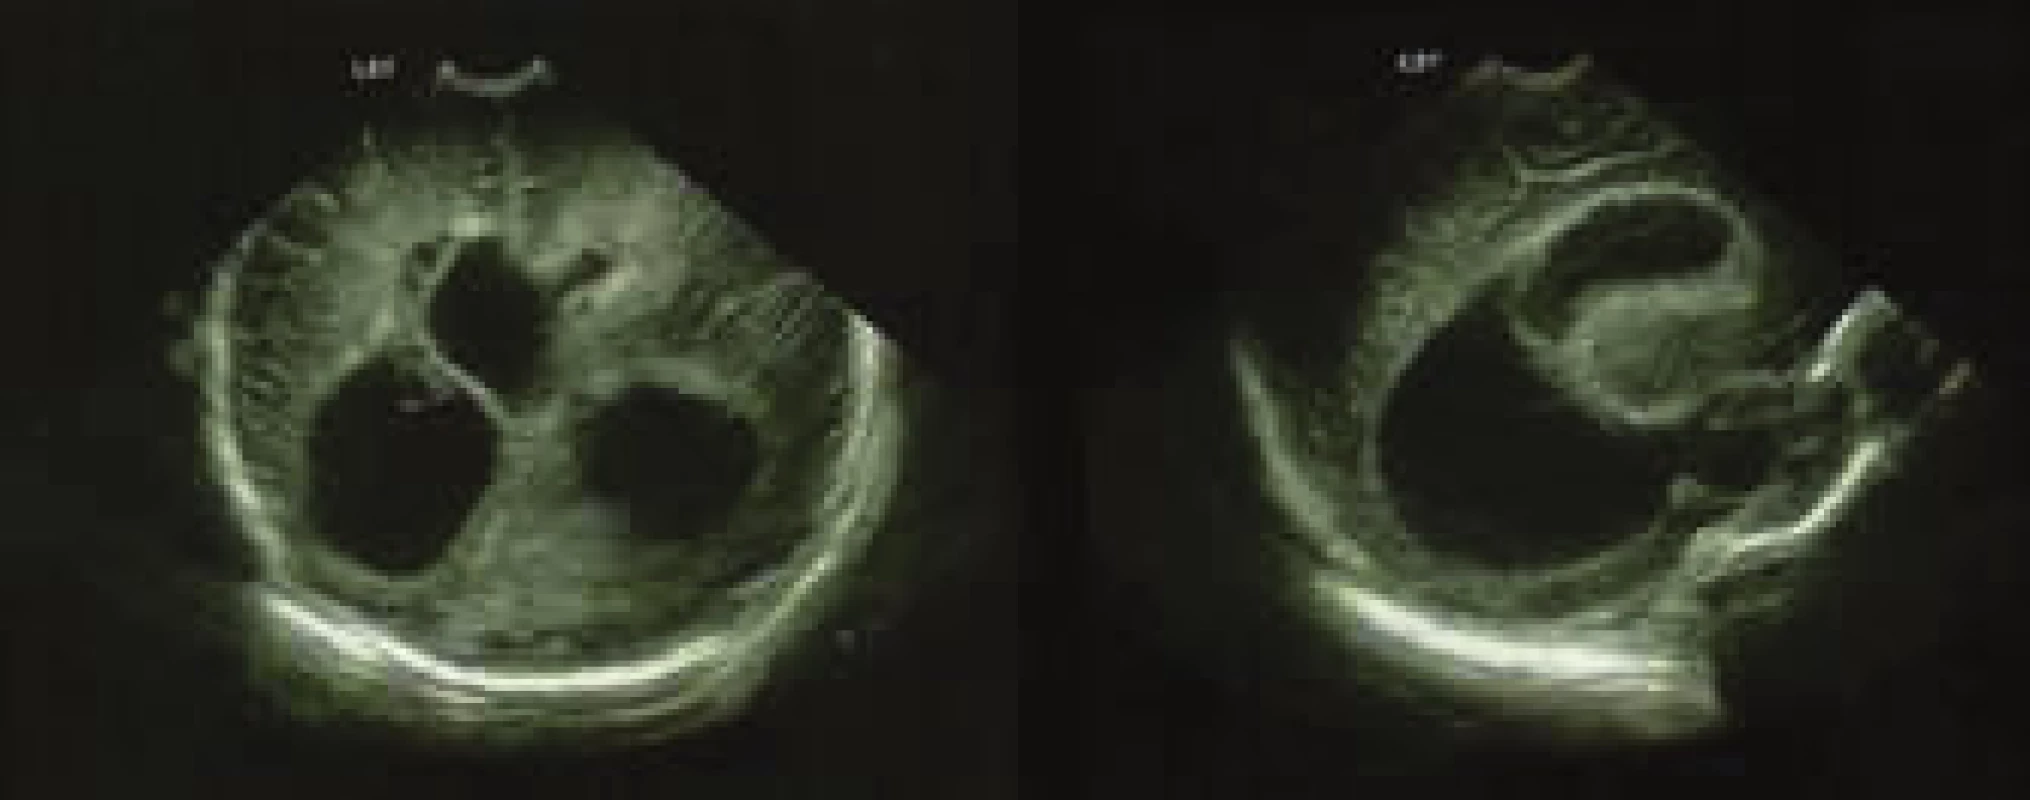 Ultrasonografický nález asymetrie a dilatace postranních
mozkových komor – oboustranně frontálně přítomné hyperechogenity
a patrné známky proběhlé ventrikulitidy.